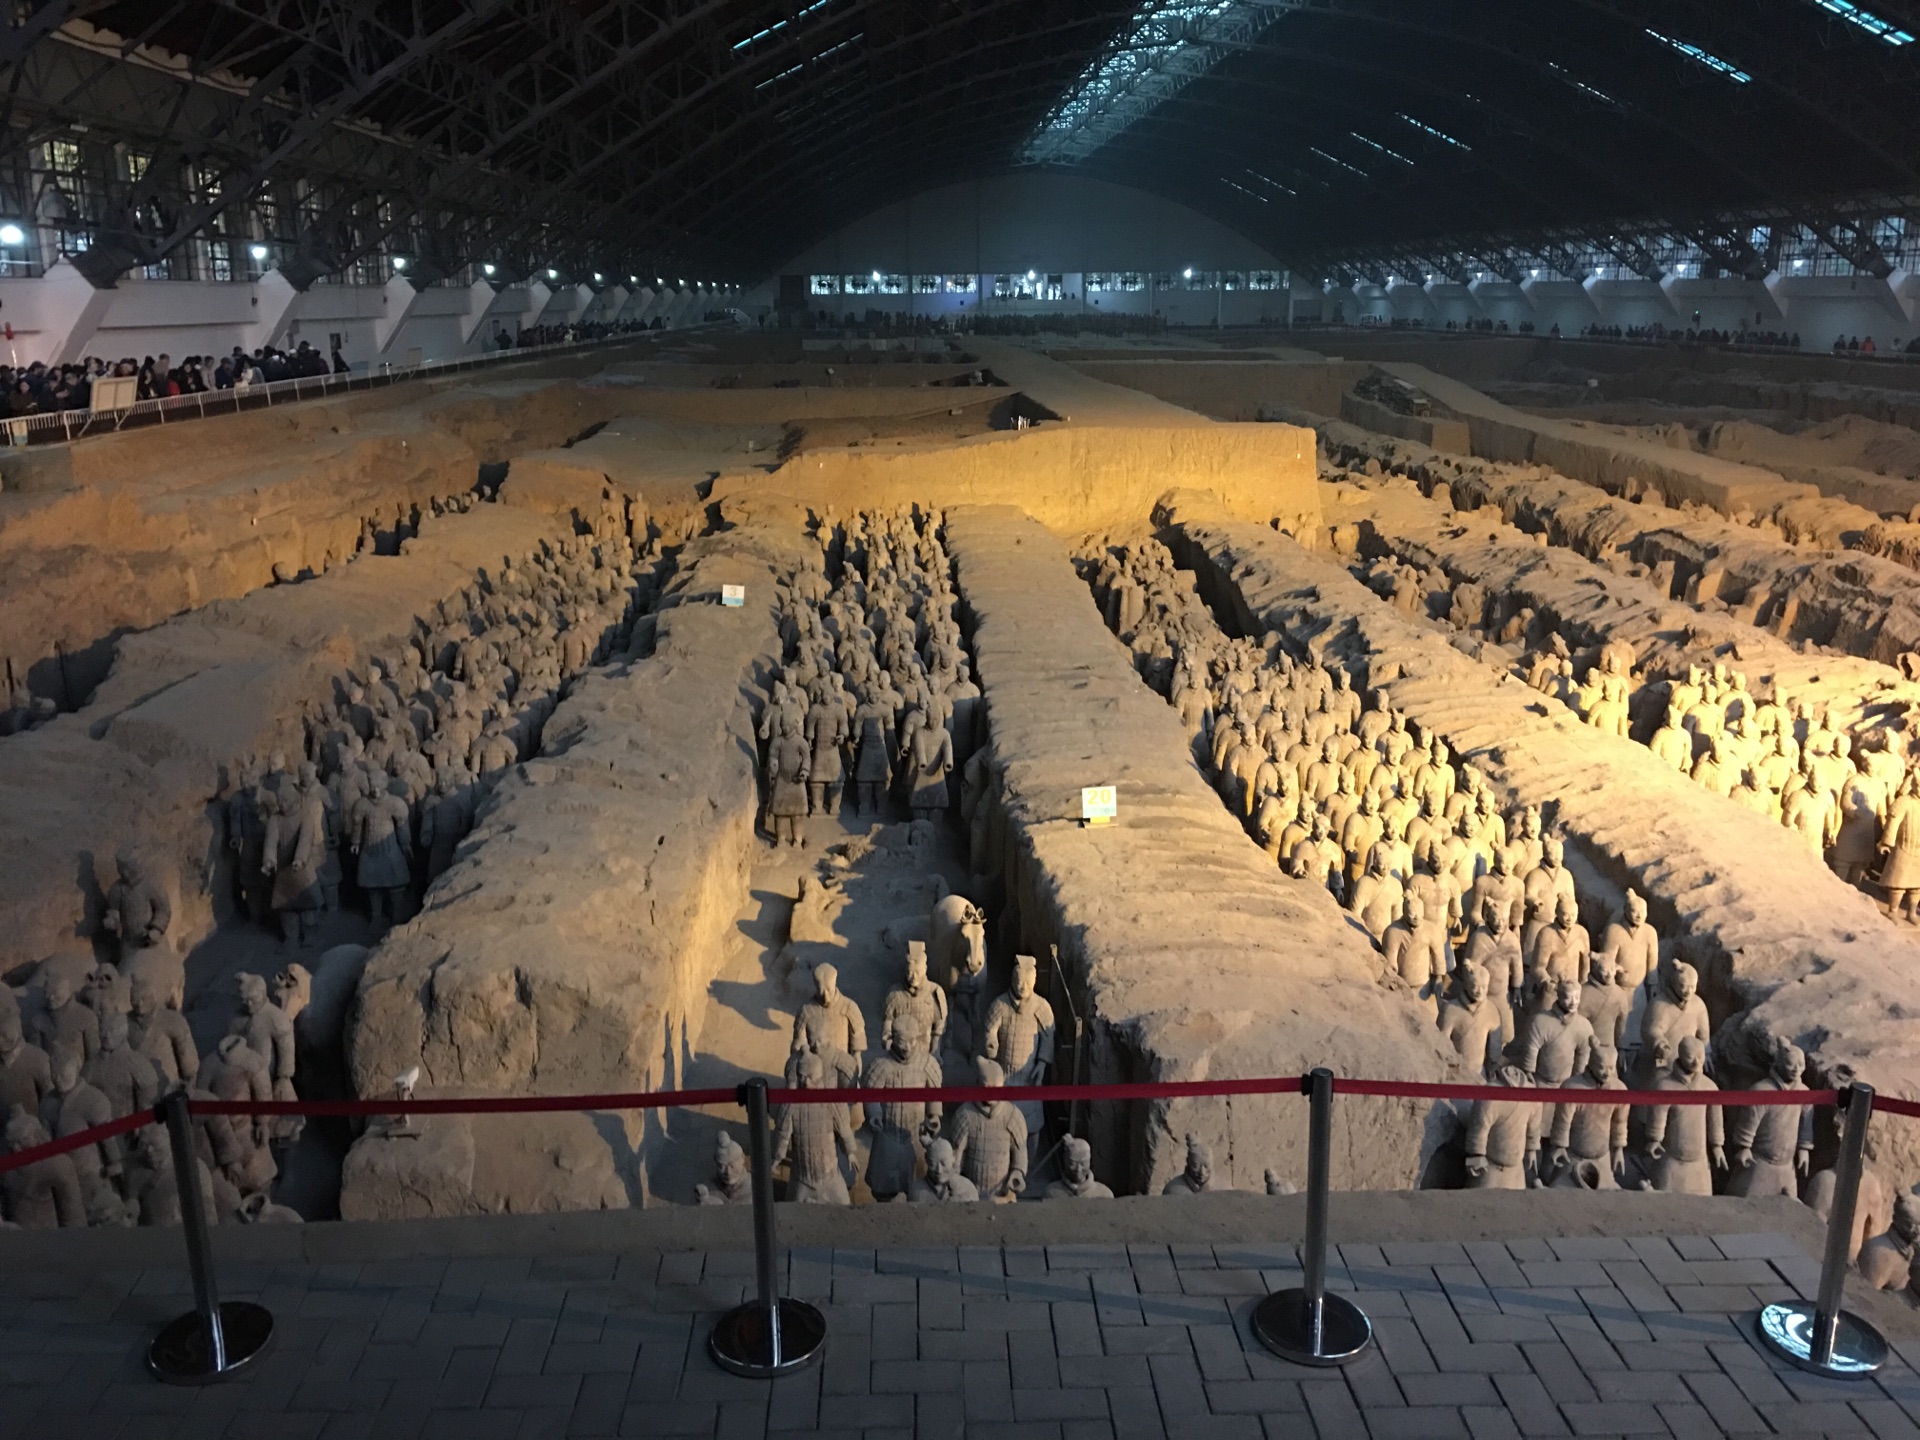 【携程攻略】西安秦始皇帝陵博物院(兵马俑)景点,历史总是让我们肃然起敬，兵俑的神情是那么的壮观，古人的智慧更是让…